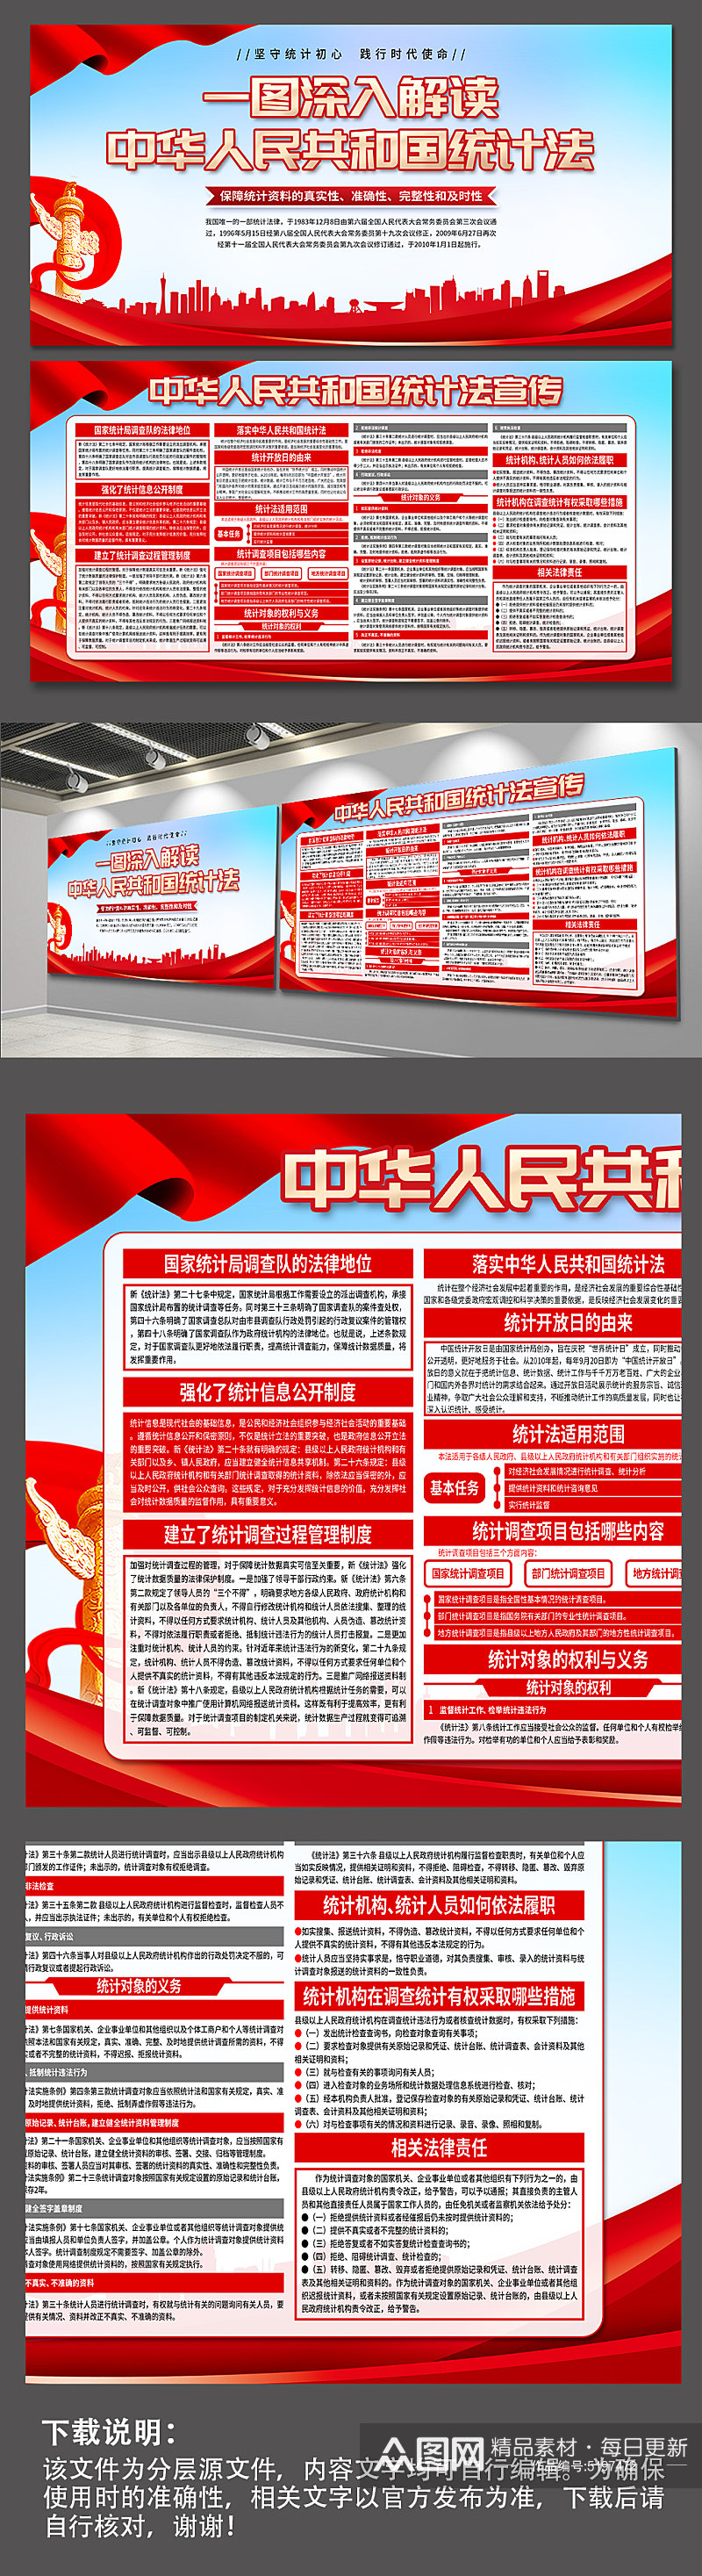 蓝色中华人民共和国统计法党建展板素材